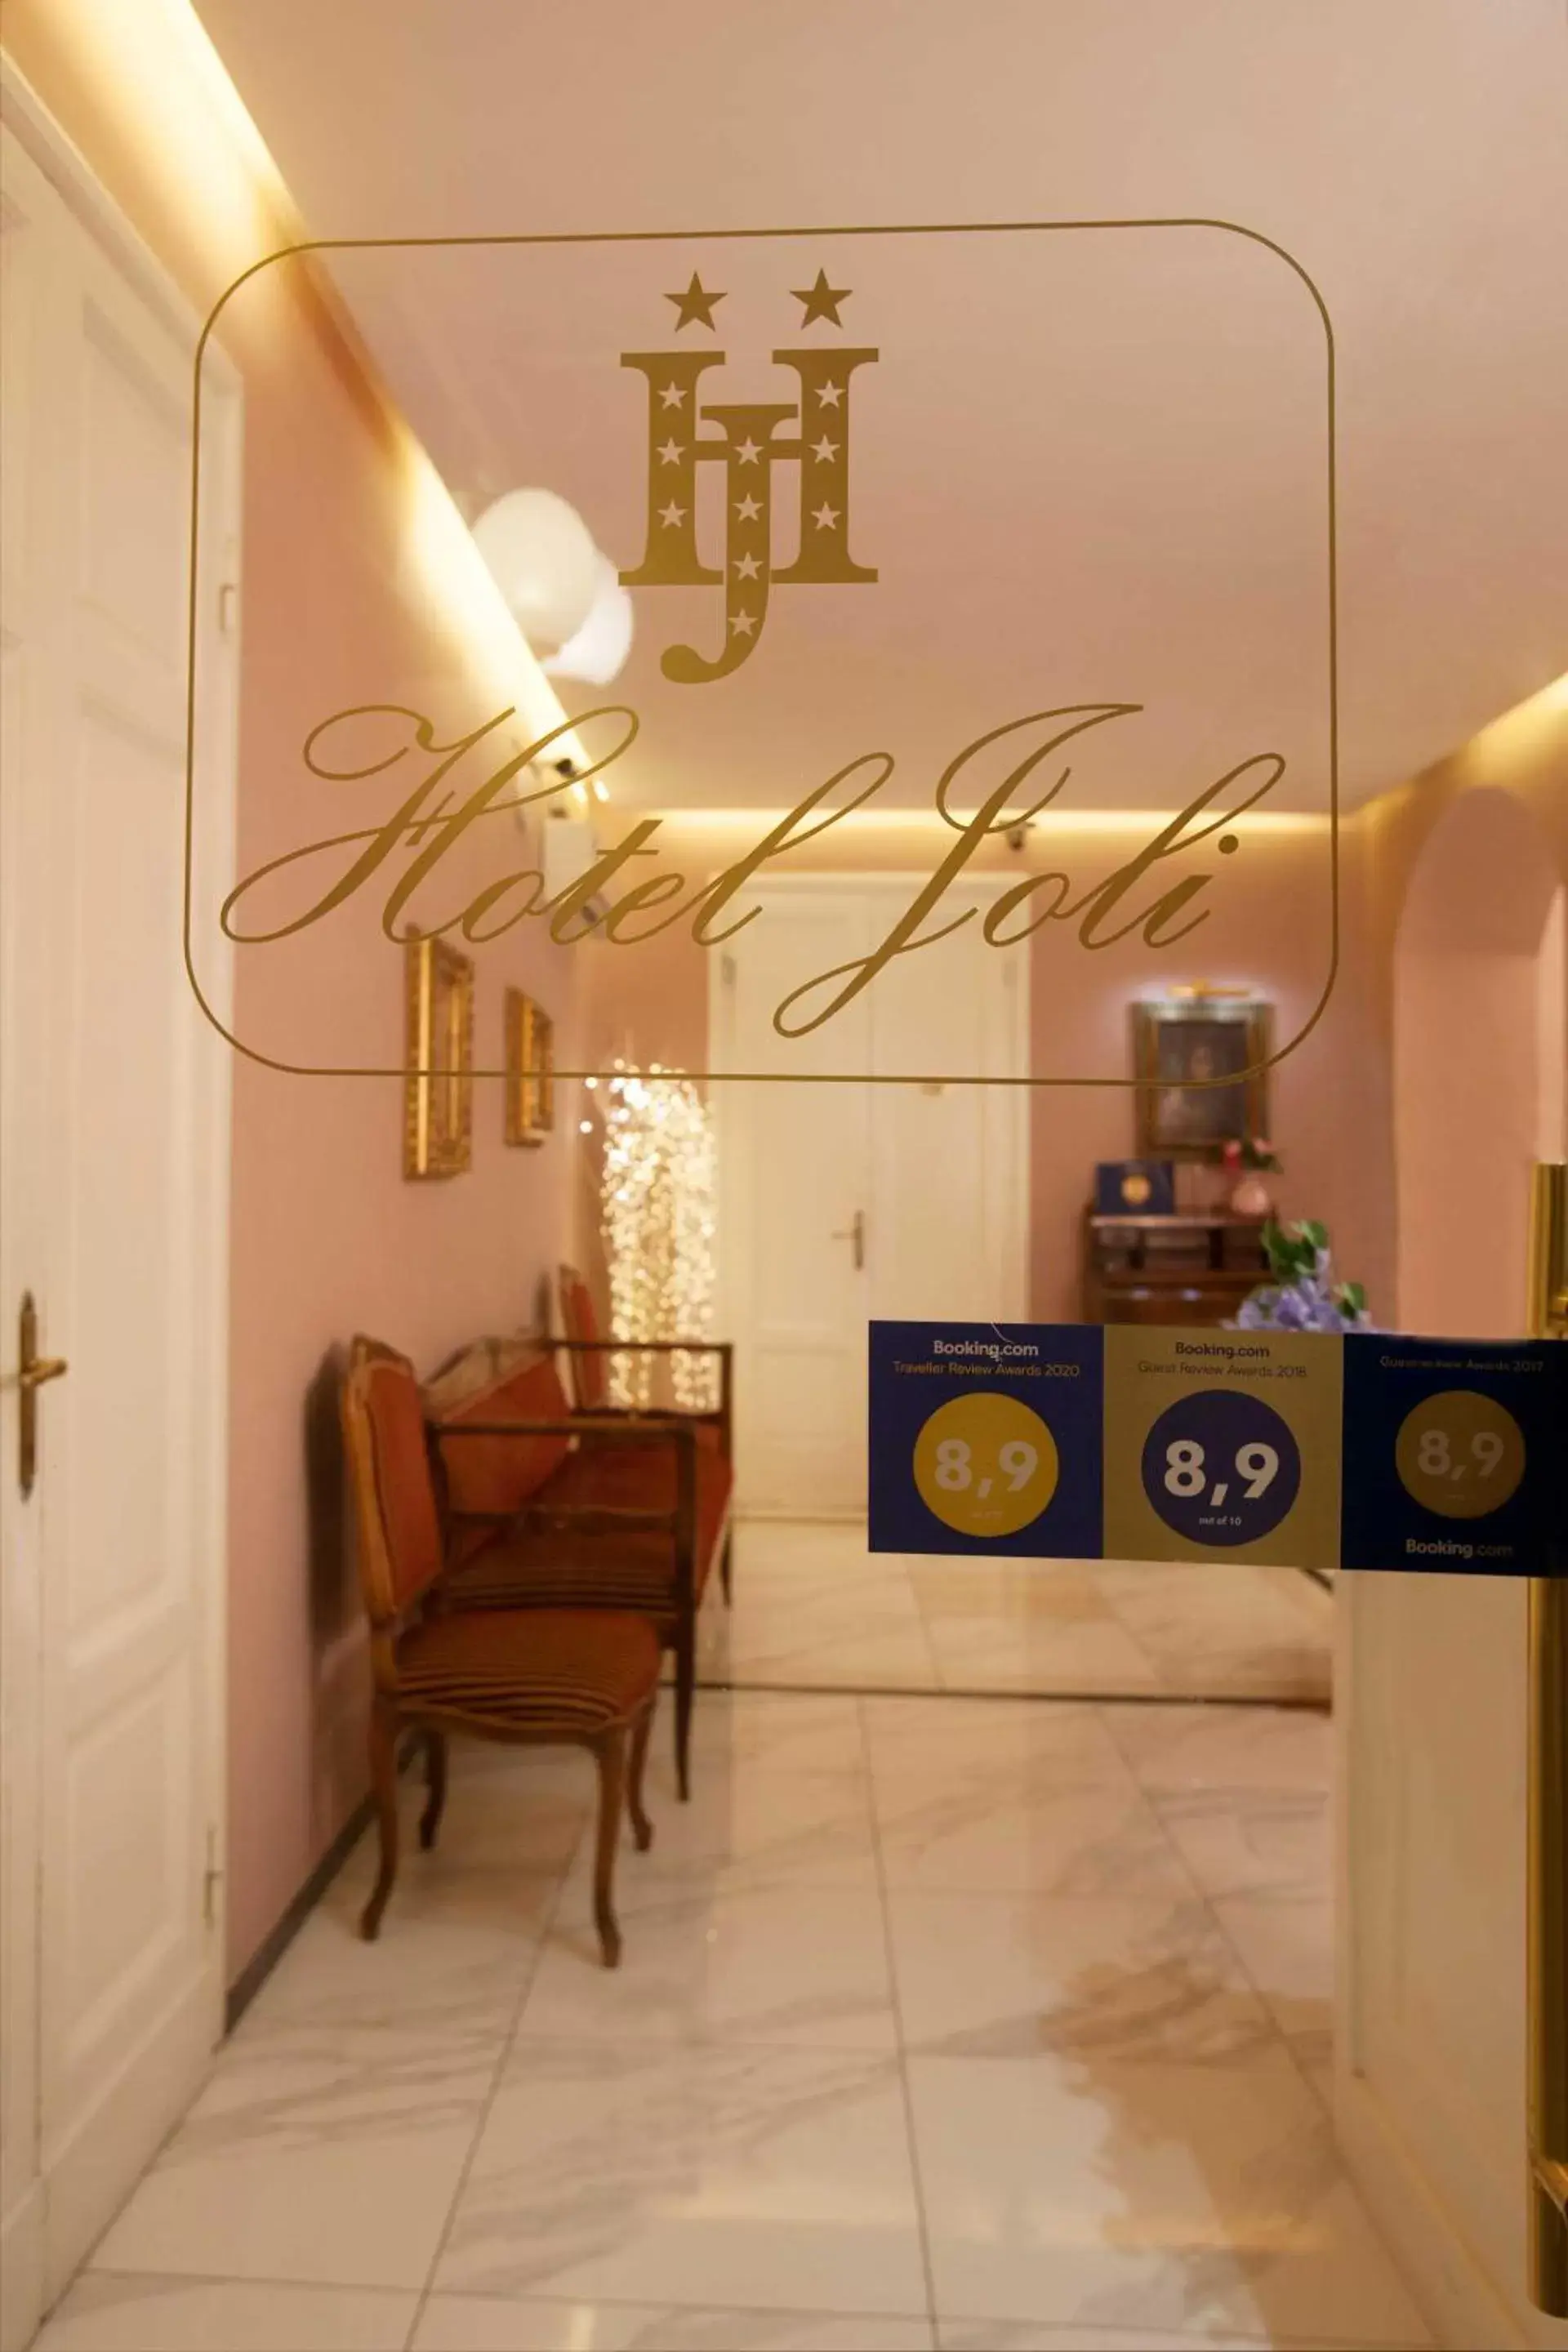 Lobby or reception, Lobby/Reception in Hotel Jolì